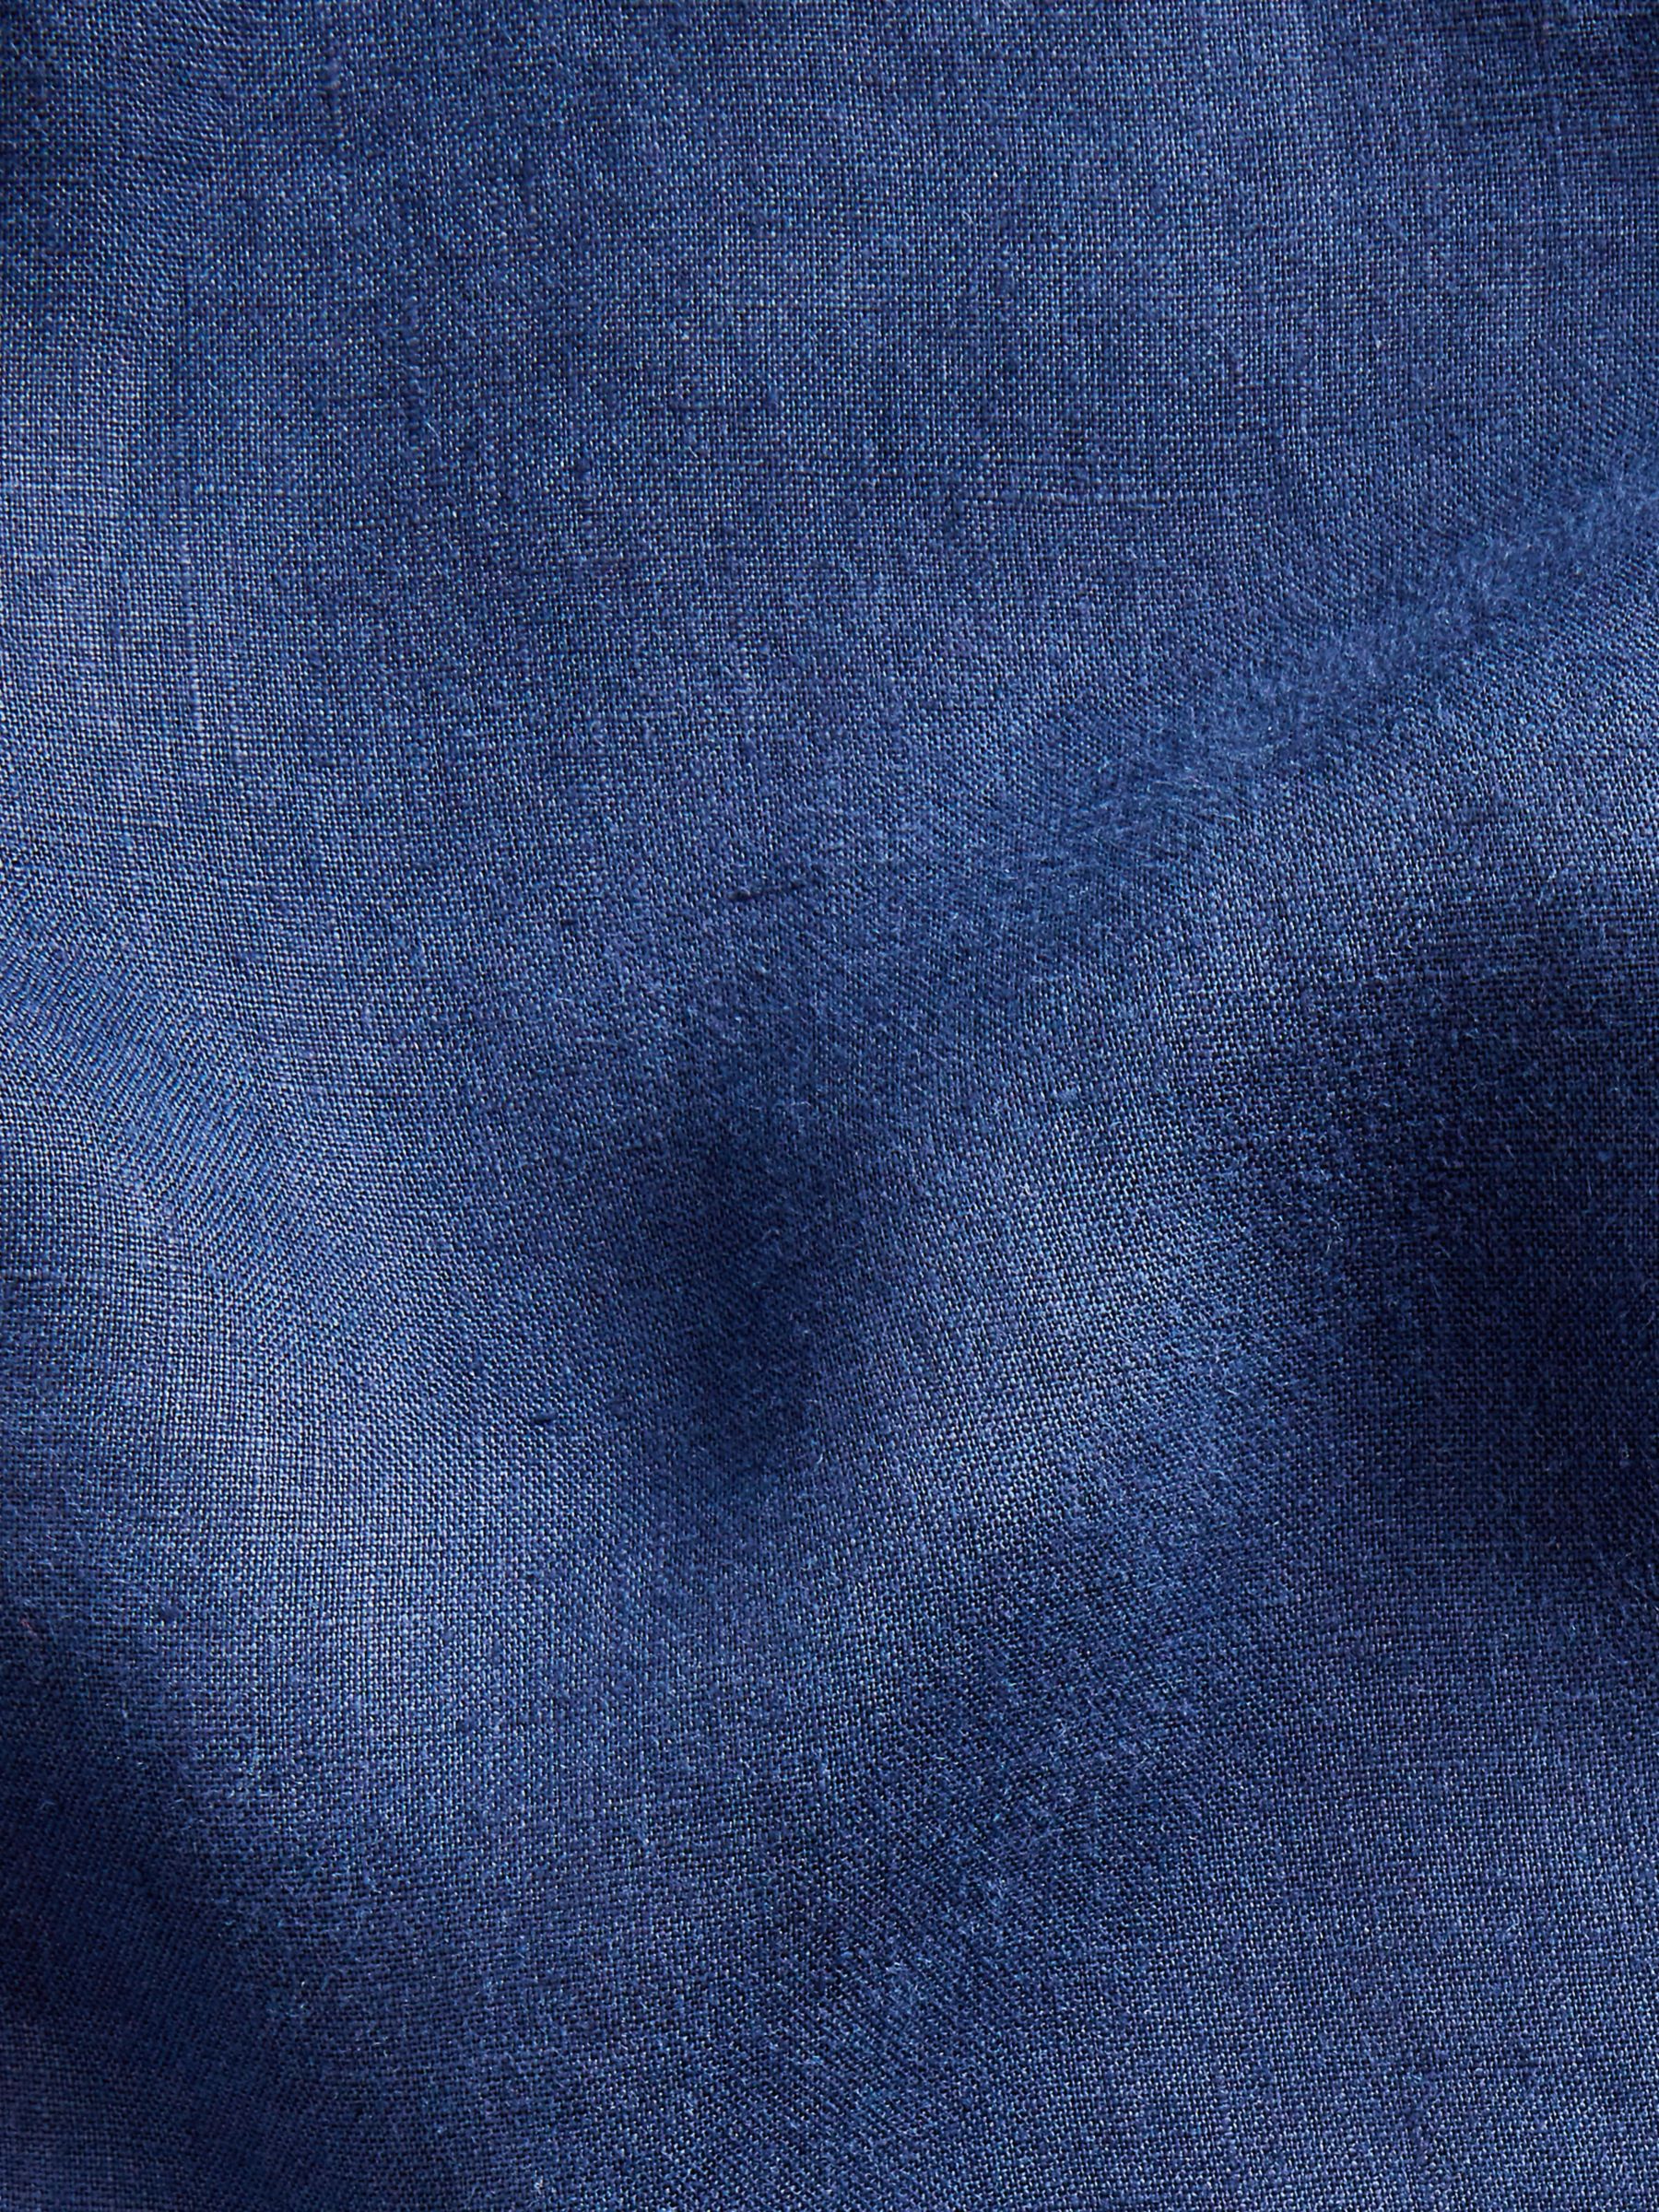 Polo Ralph Lauren Linen Shirt, Newport Navy, S